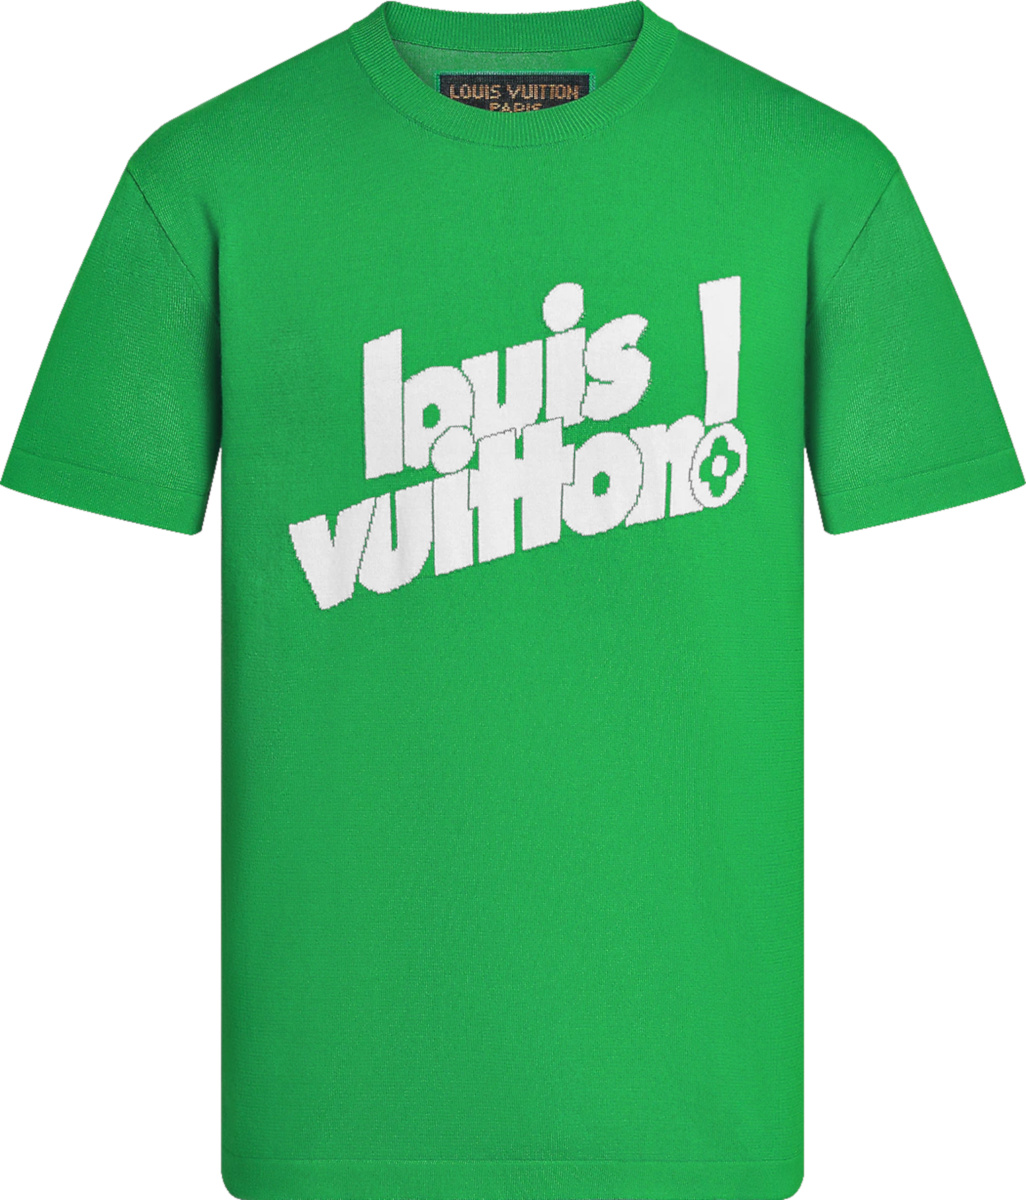 lv green t shirt